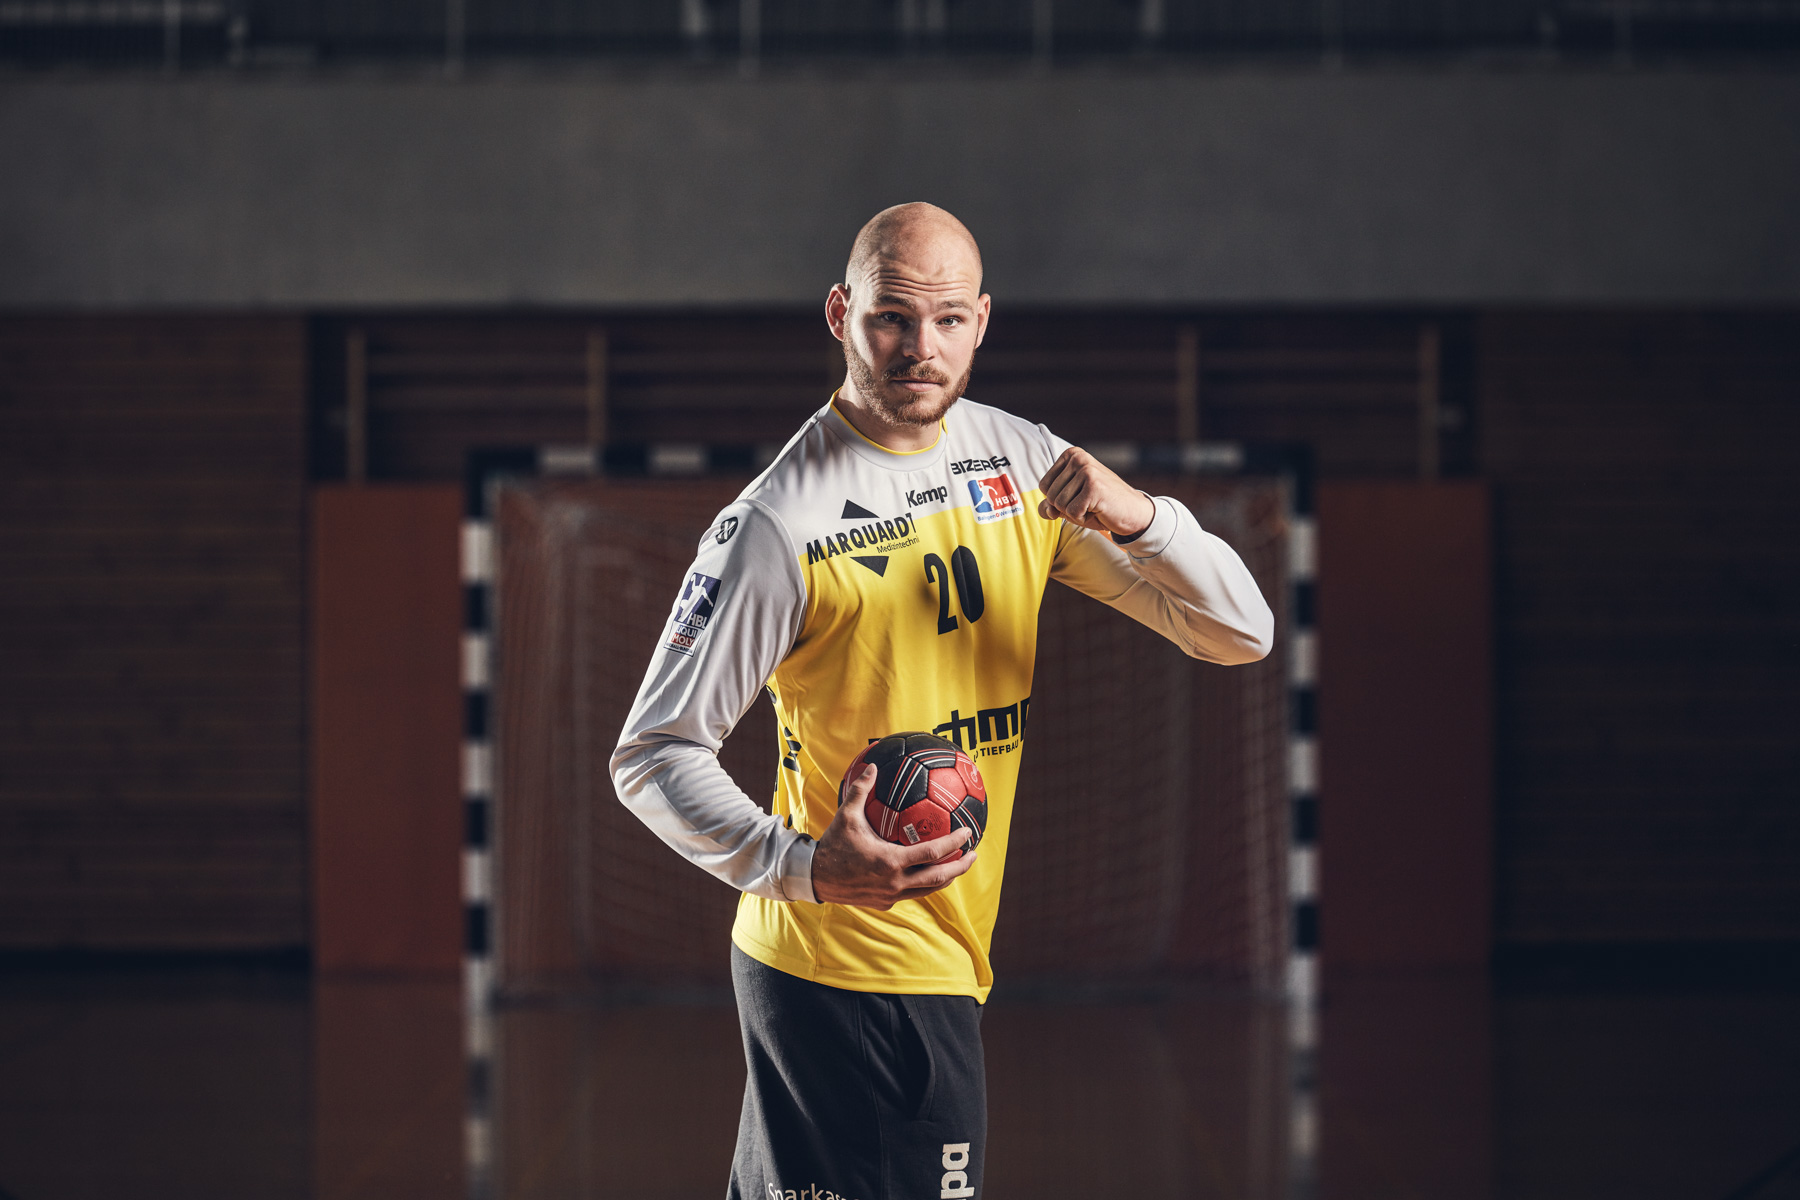 Handballspieler Mike Jensen des HBW Balingen-Weilstetten